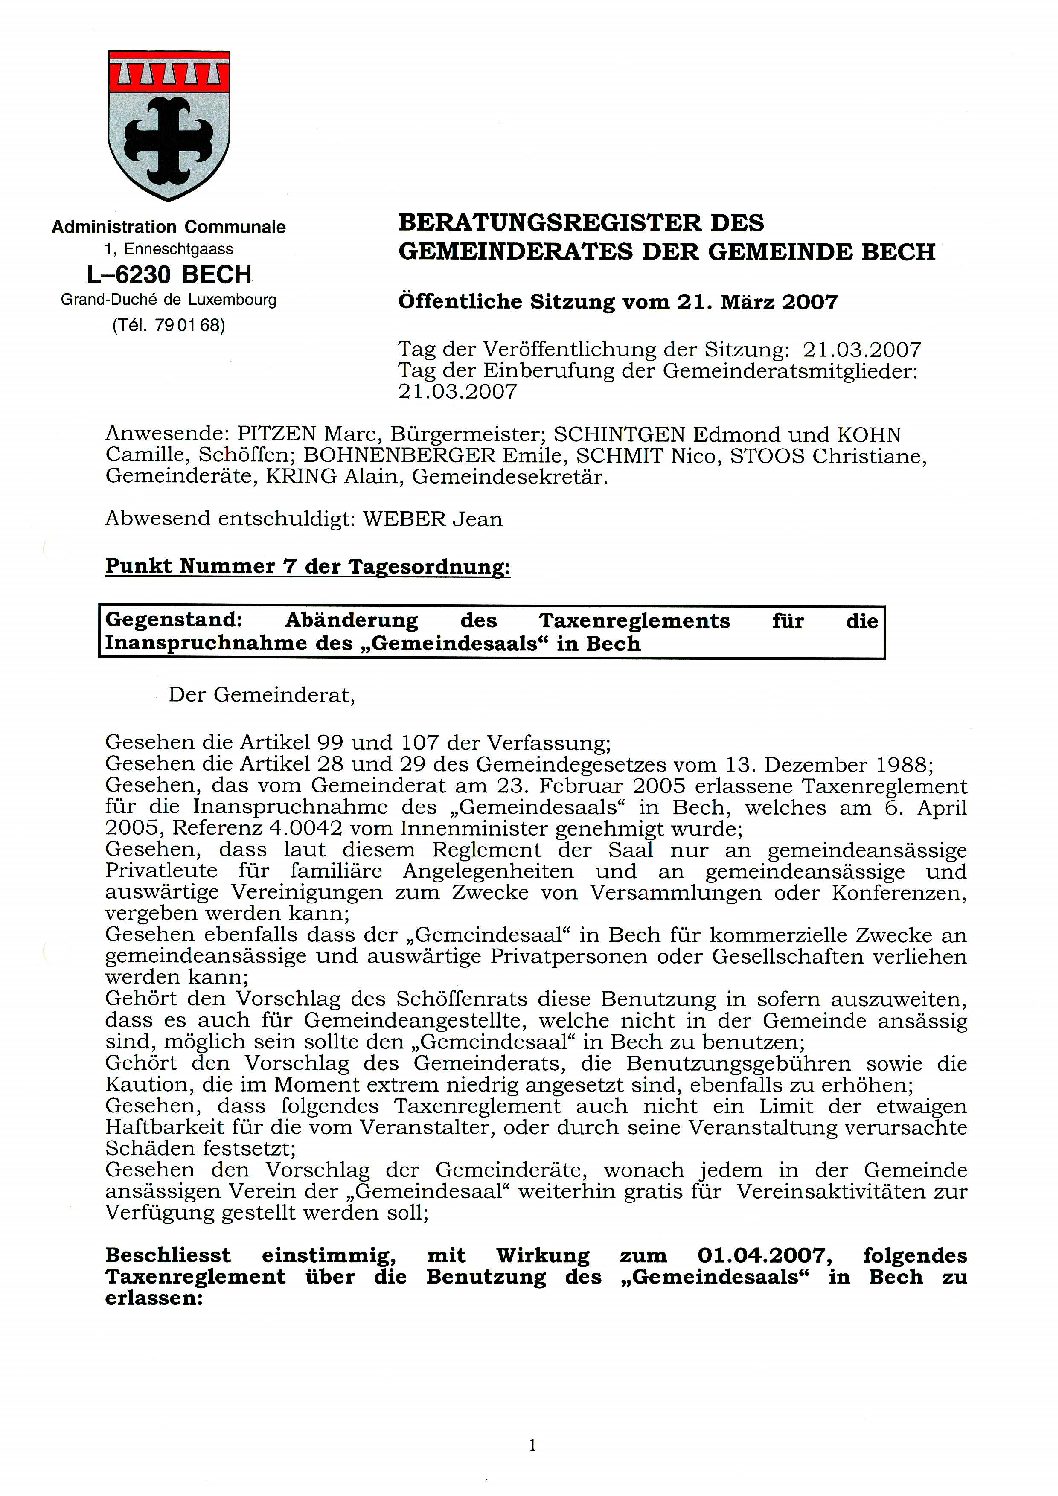 Taxe location Gemengesall Bech (règlement)